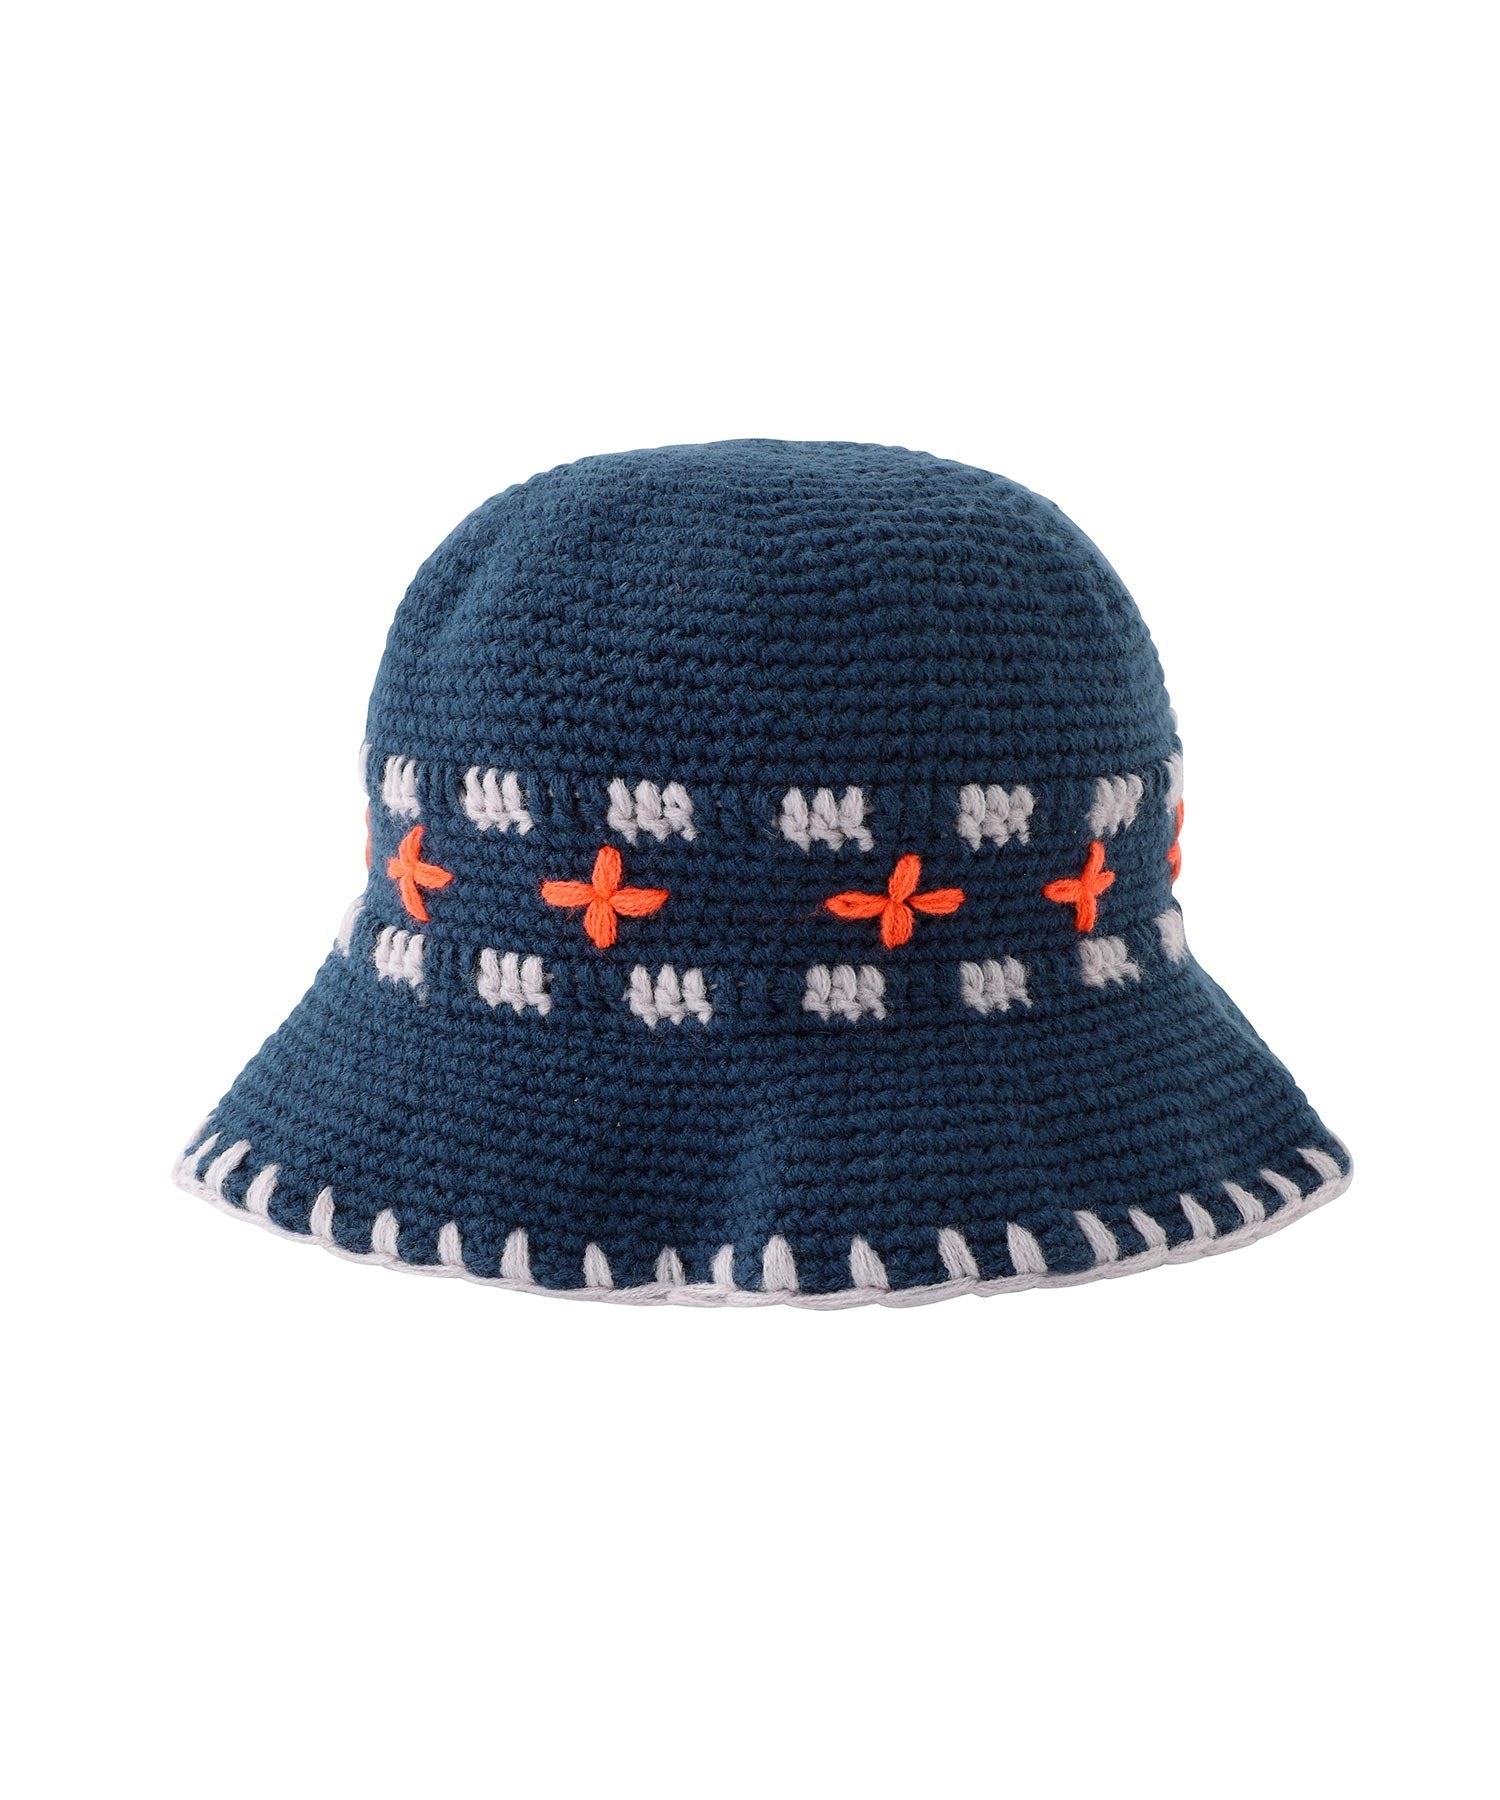 帽子soonerorlater Hand-knitted Bucket Hat